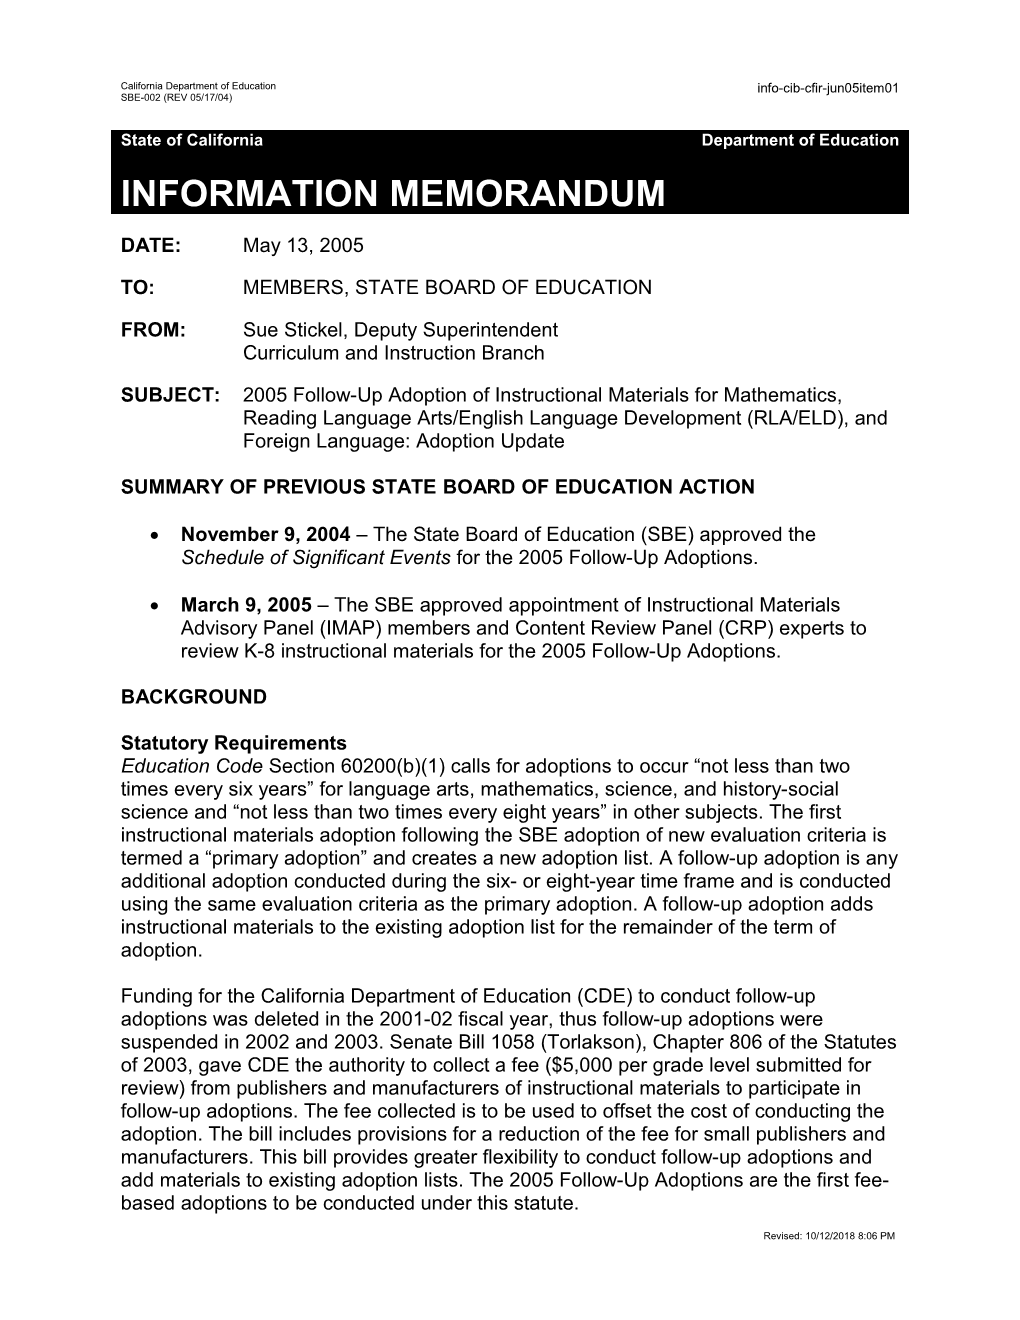 June 2005 CIB-CFIR Item 01 - Information Memorandum (CA State Board of Education)